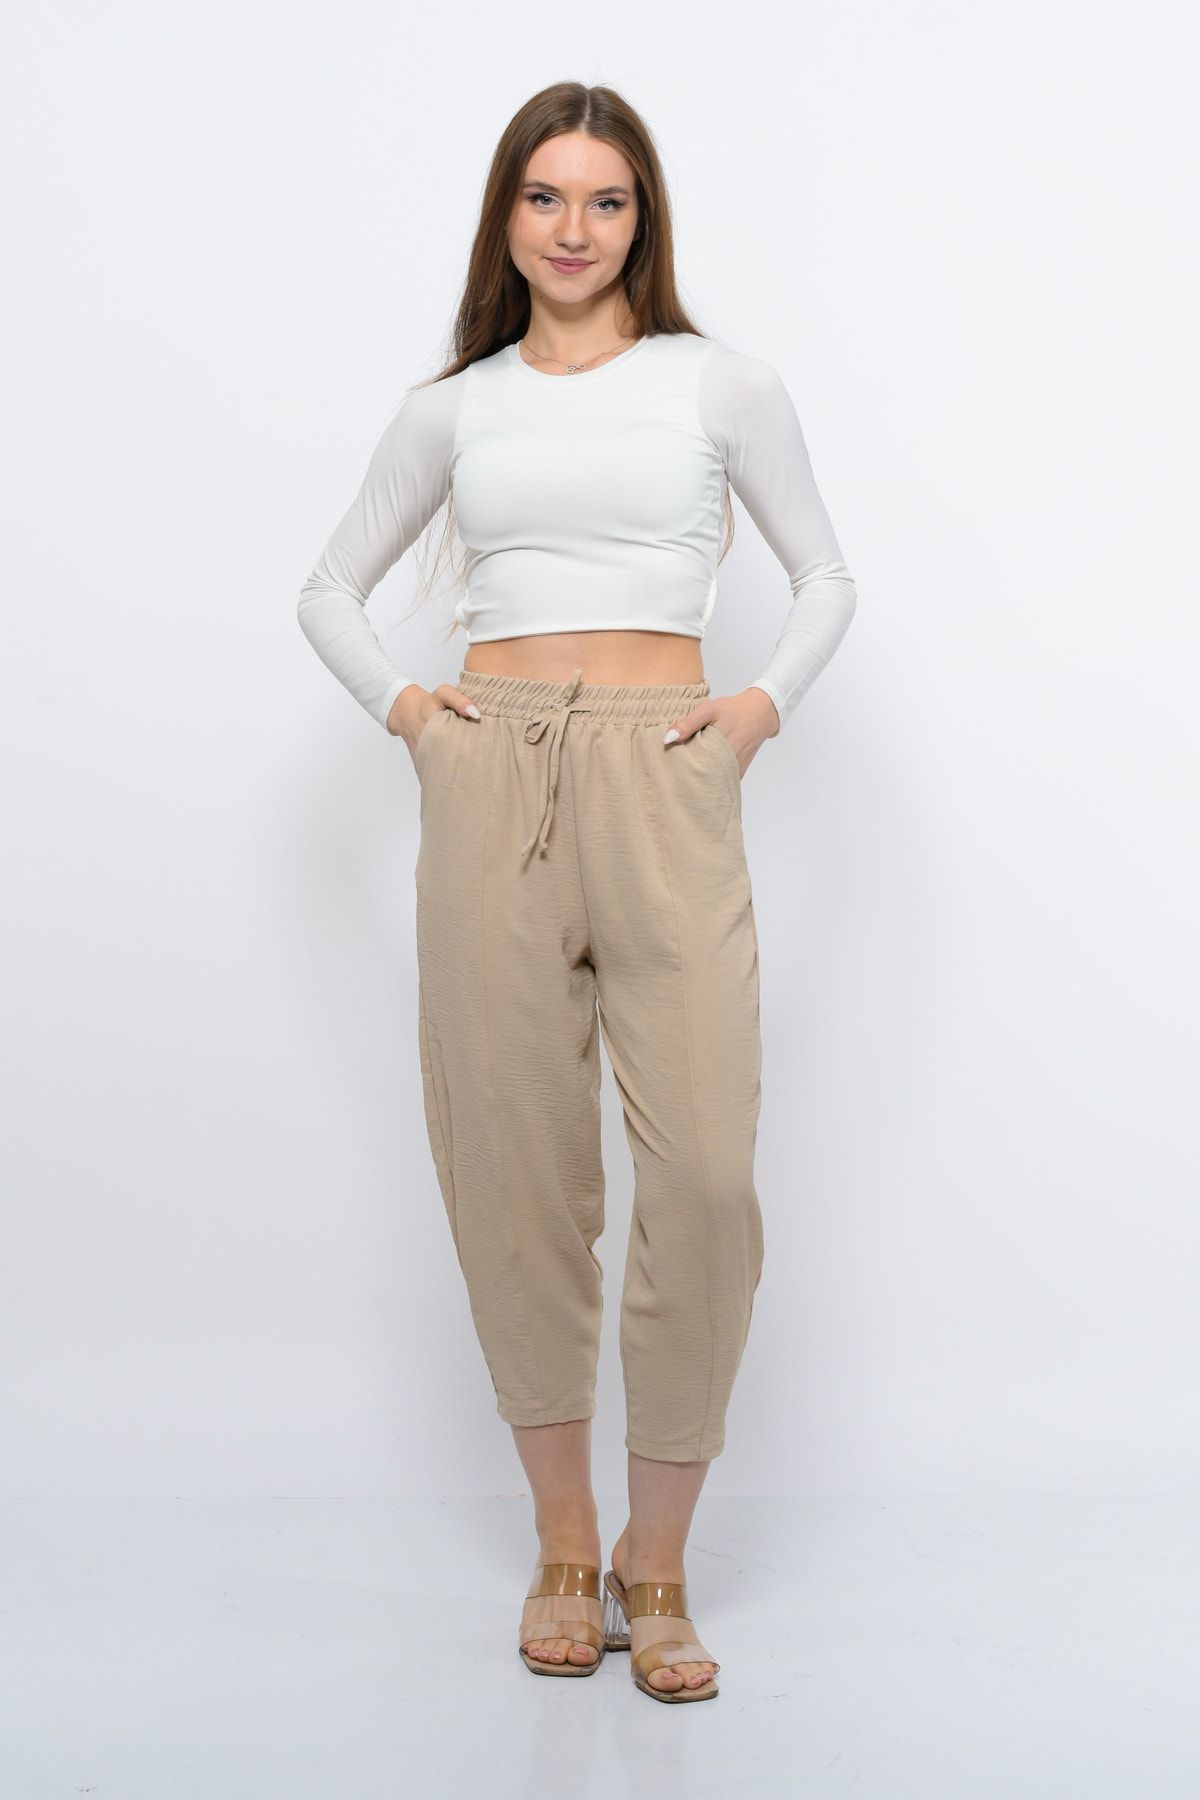 Sh Mağazacılık Ince Yazlık Kadın Yüksek Bel Rahat Salaş Pamuklu Slouchy Fit Basic Beli Lastikli Bilek Boy Pantolon